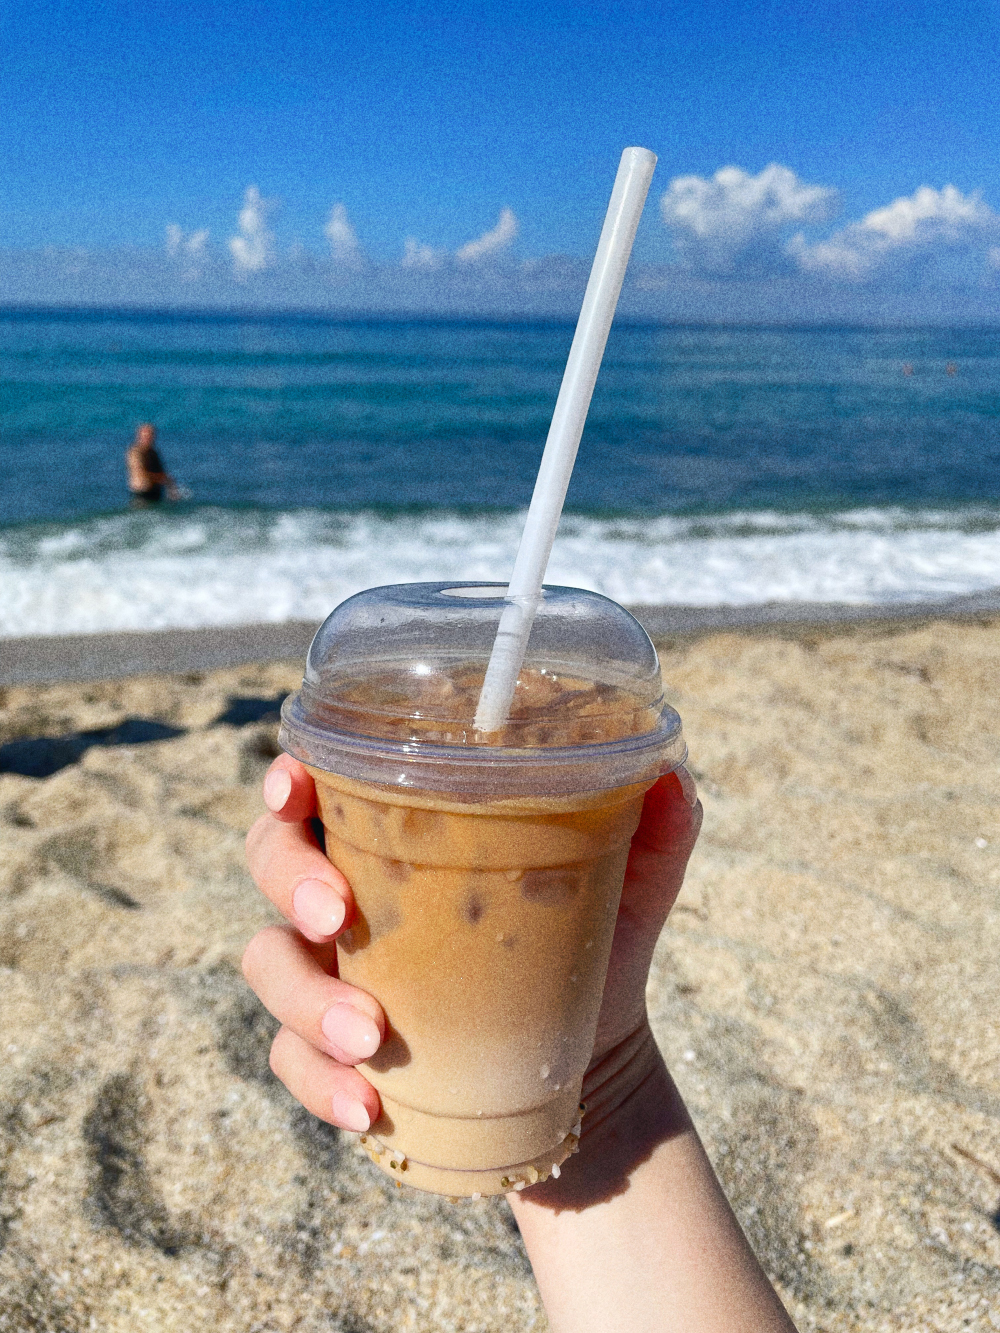 Айс⁠-⁠кофе в отпуске, да еще и на берегу, кажется вкуснее обычного